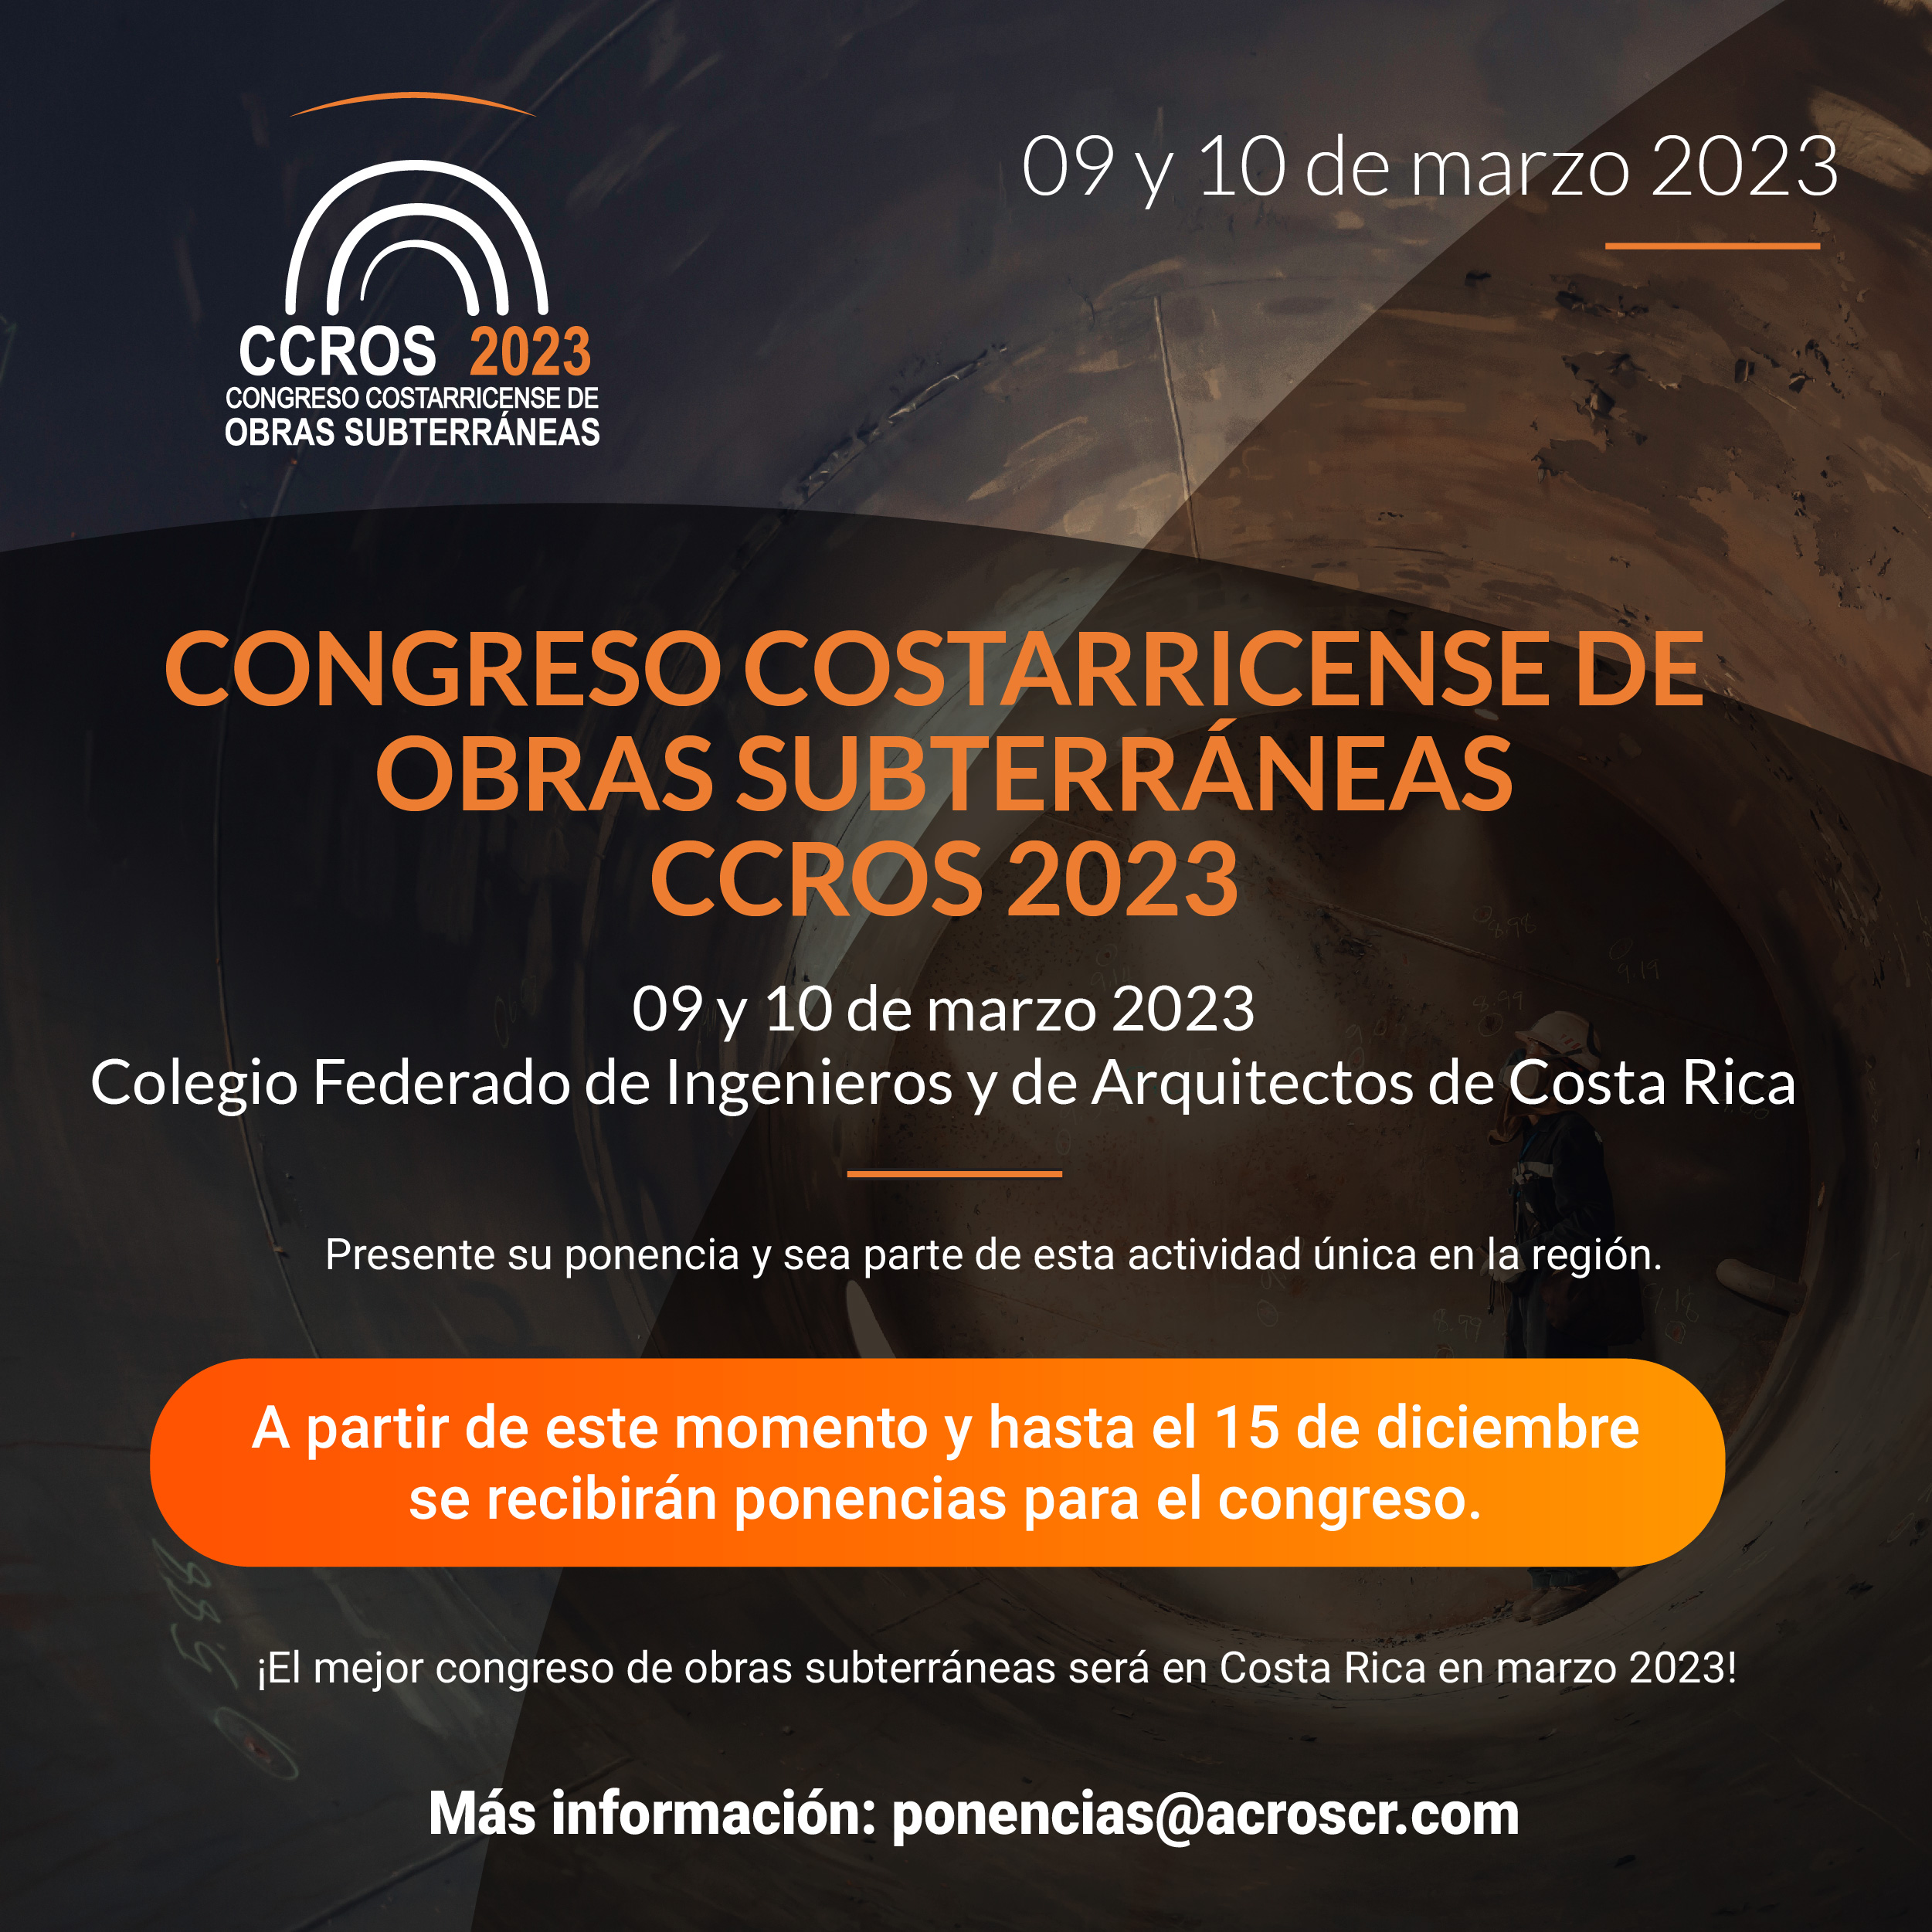 Congreso Costarricense de Obras Subterráneas, CCROS 2023